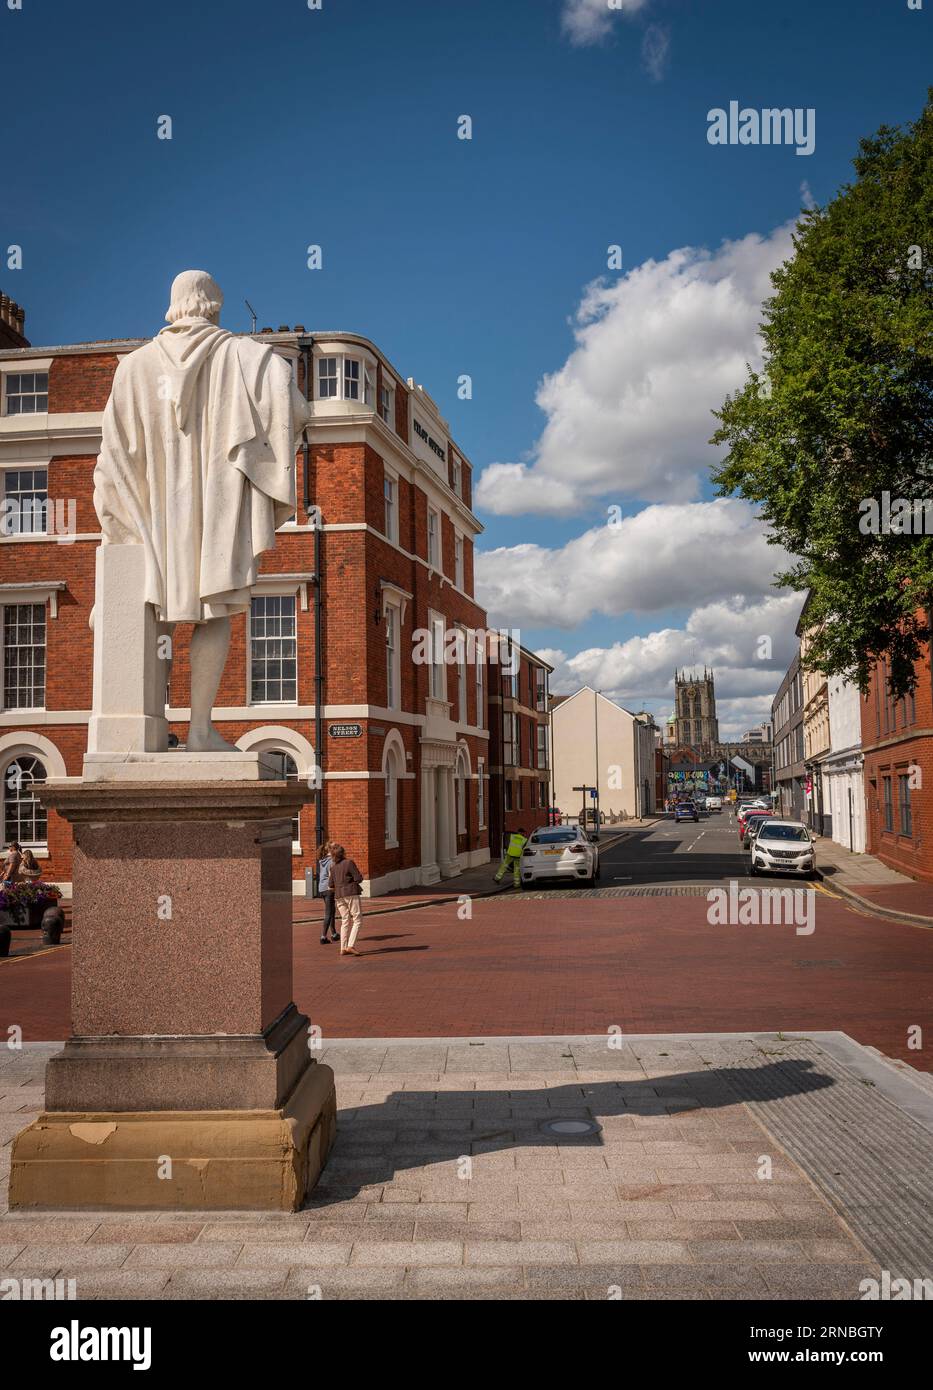 Une statue de Sir William de-la-Pole, premier maire de Kingston upon Hull au 14e siècle sur le front de mer du port de Hull, Yorkshire, Royaume-Uni Banque D'Images